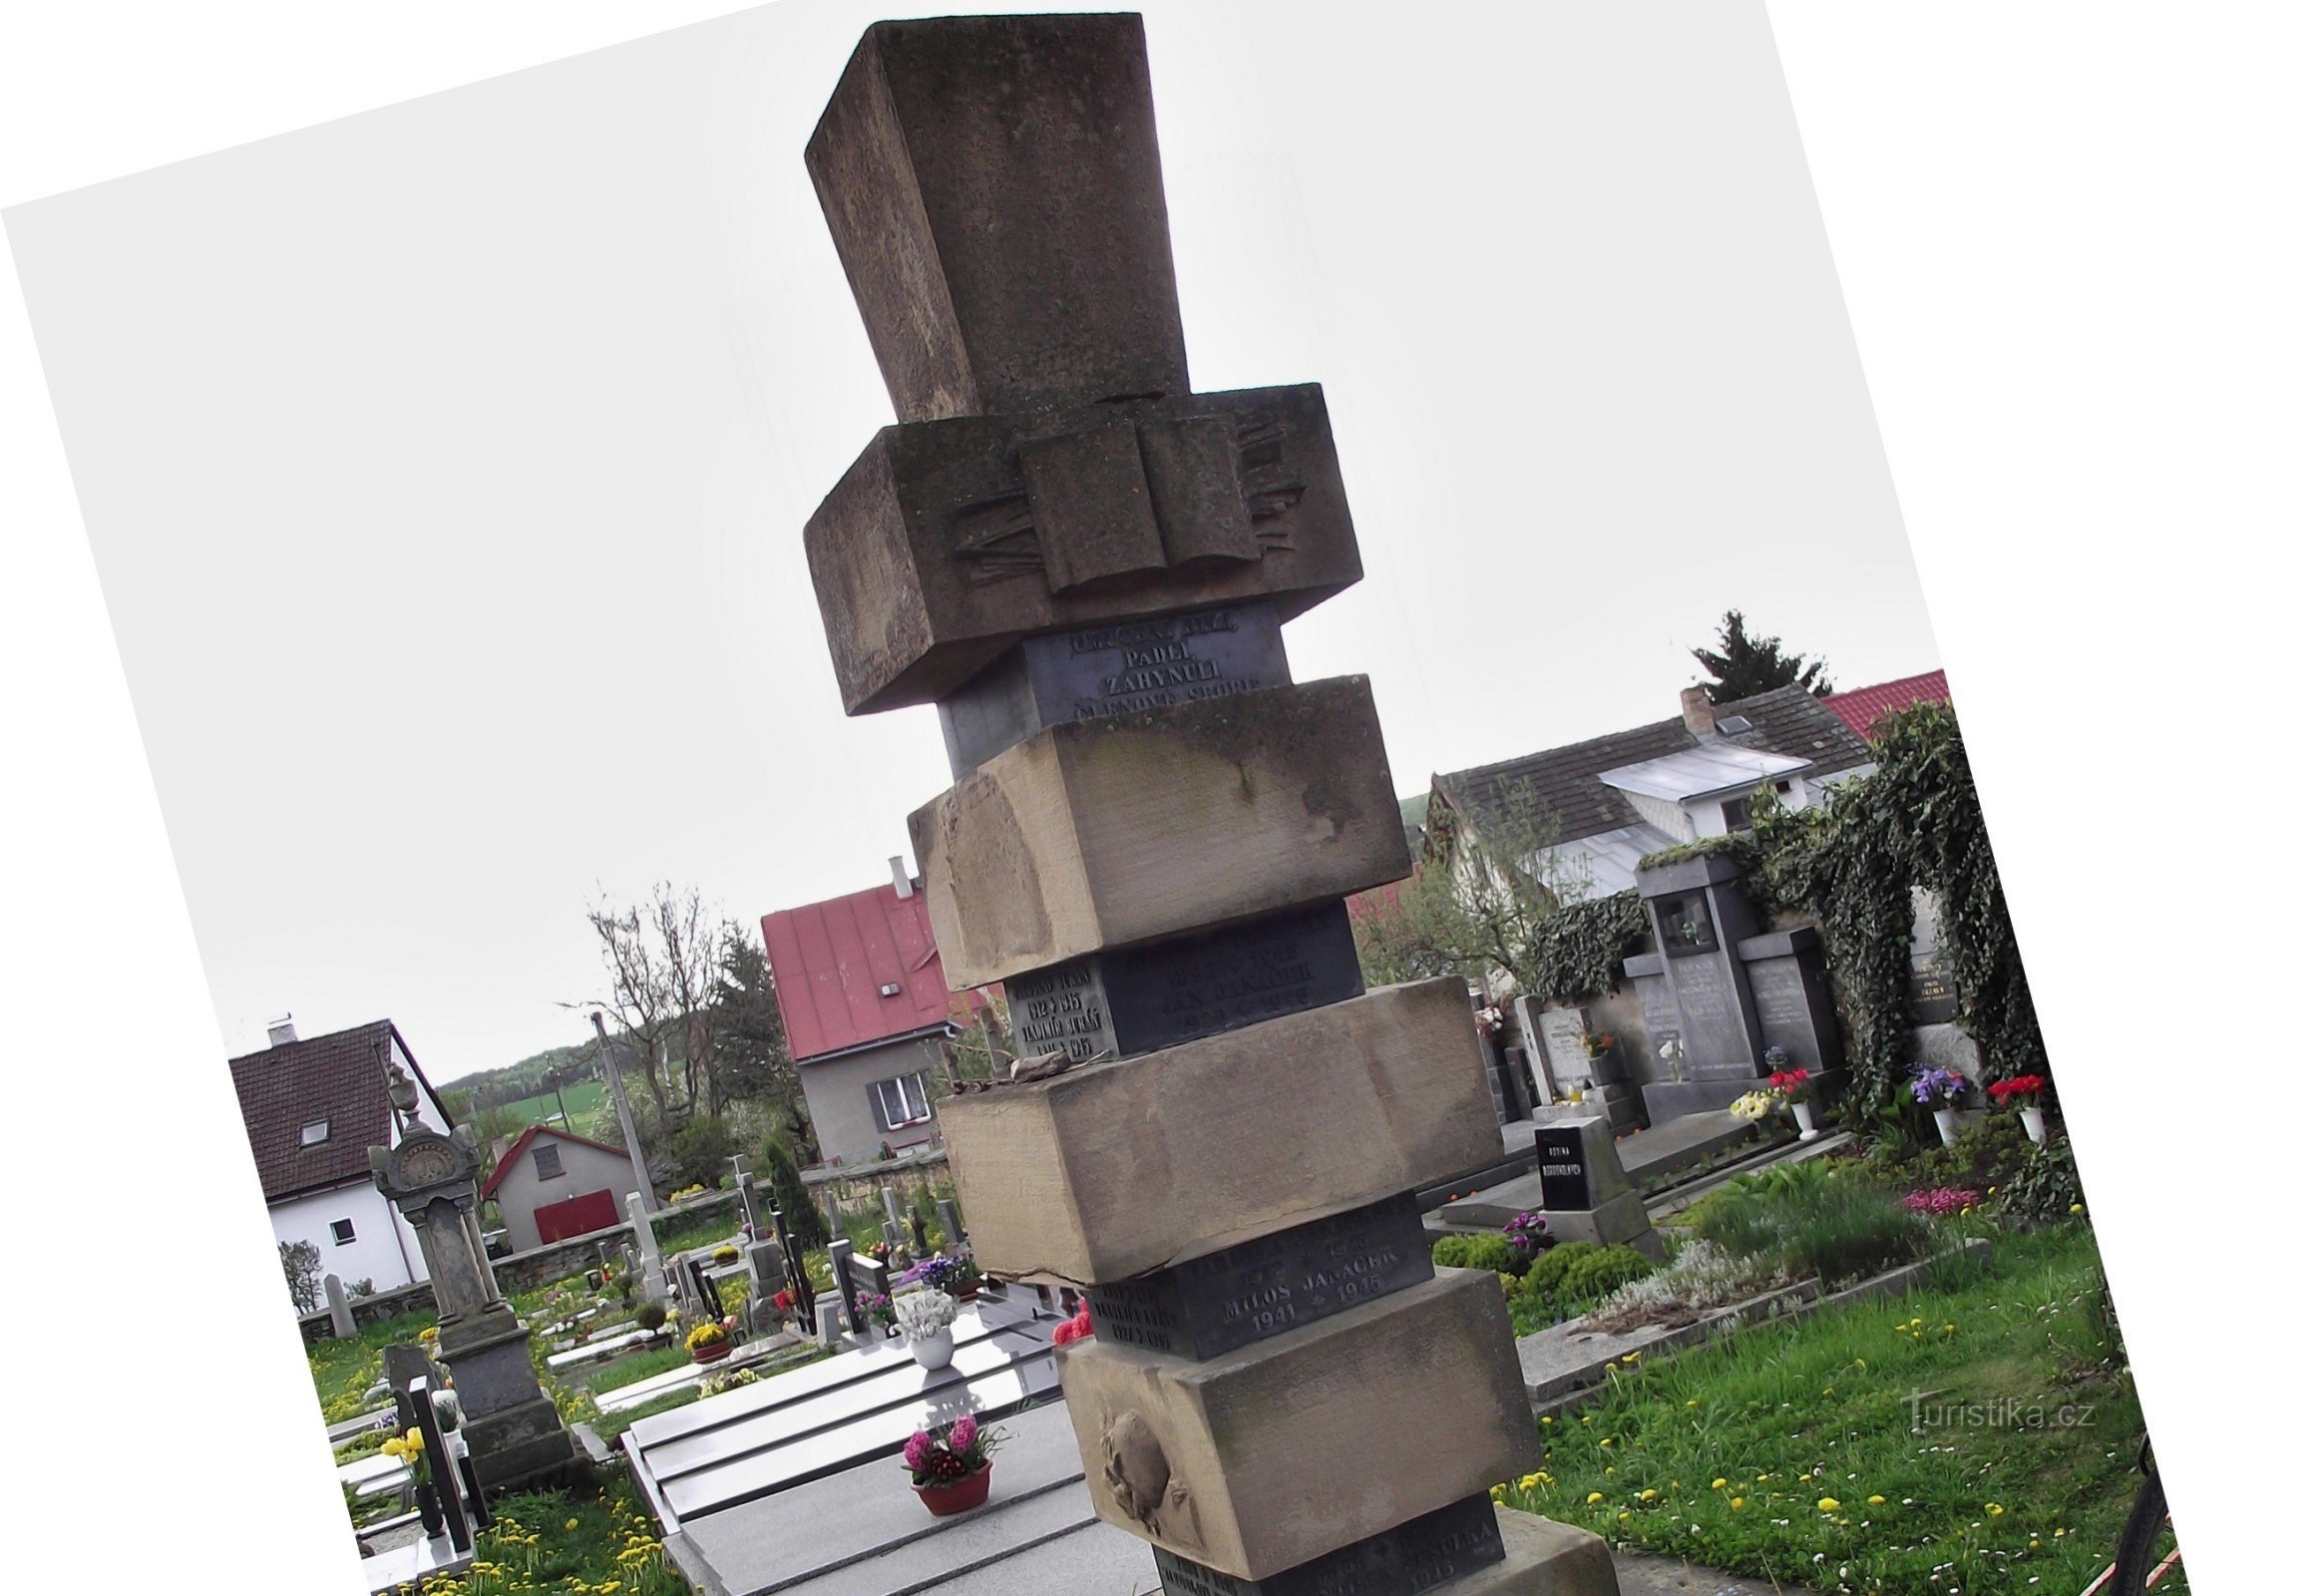 Круцембурк - памятник жертвам оккупации / Второй мировой войны (Винсенц Маковский)